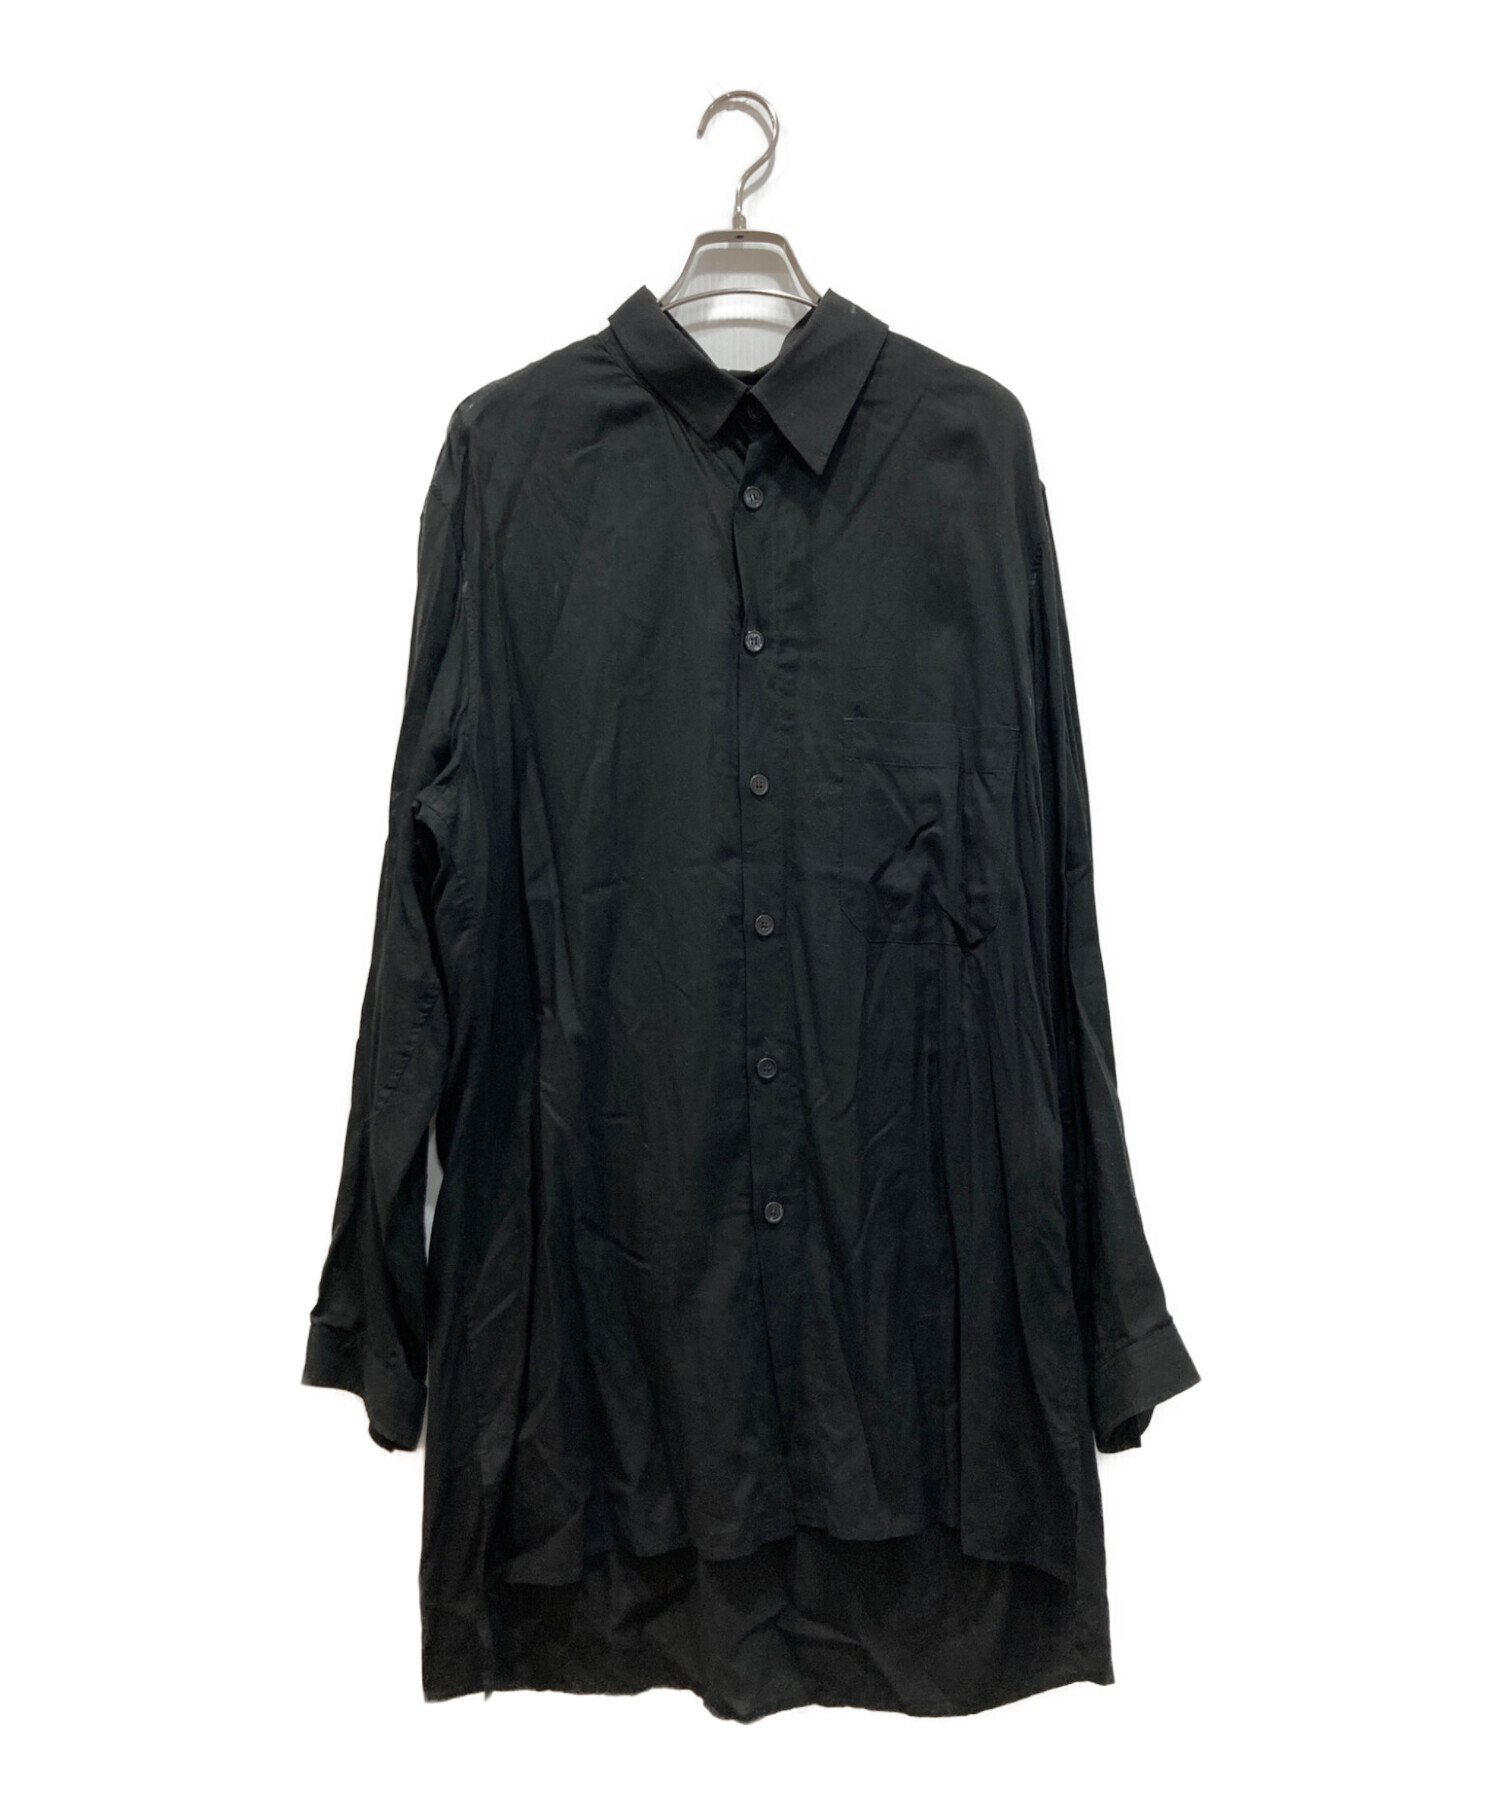 Yohji Yamamoto pour homme (ヨウジヤマモト プールオム) ロングデザインシャツ ブラック サイズ:2